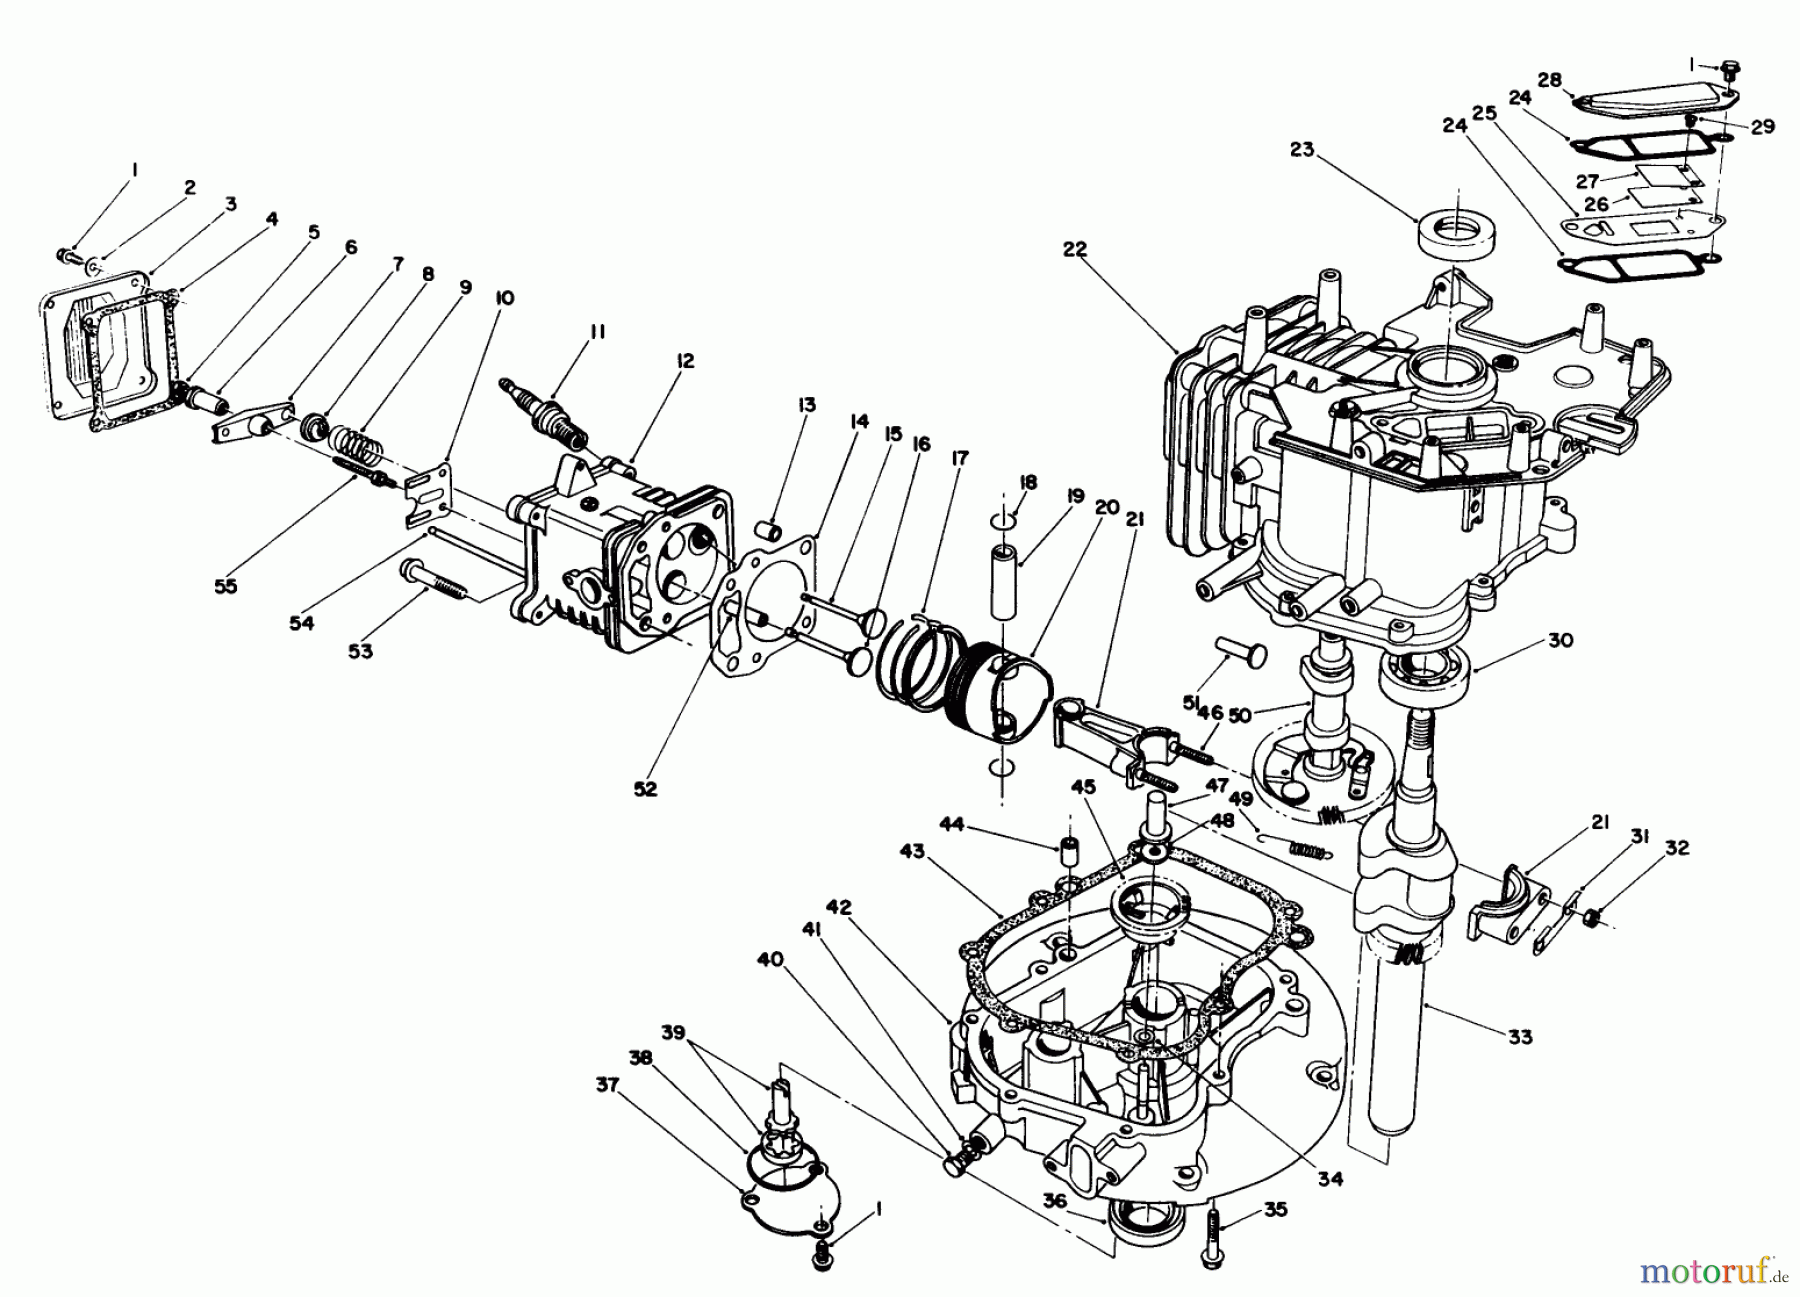  Toro Neu Mowers, Walk-Behind Seite 1 20628C - Toro Lawnmower, 1986 (6000001-6999999) ENGINE ASSEMBLY #2